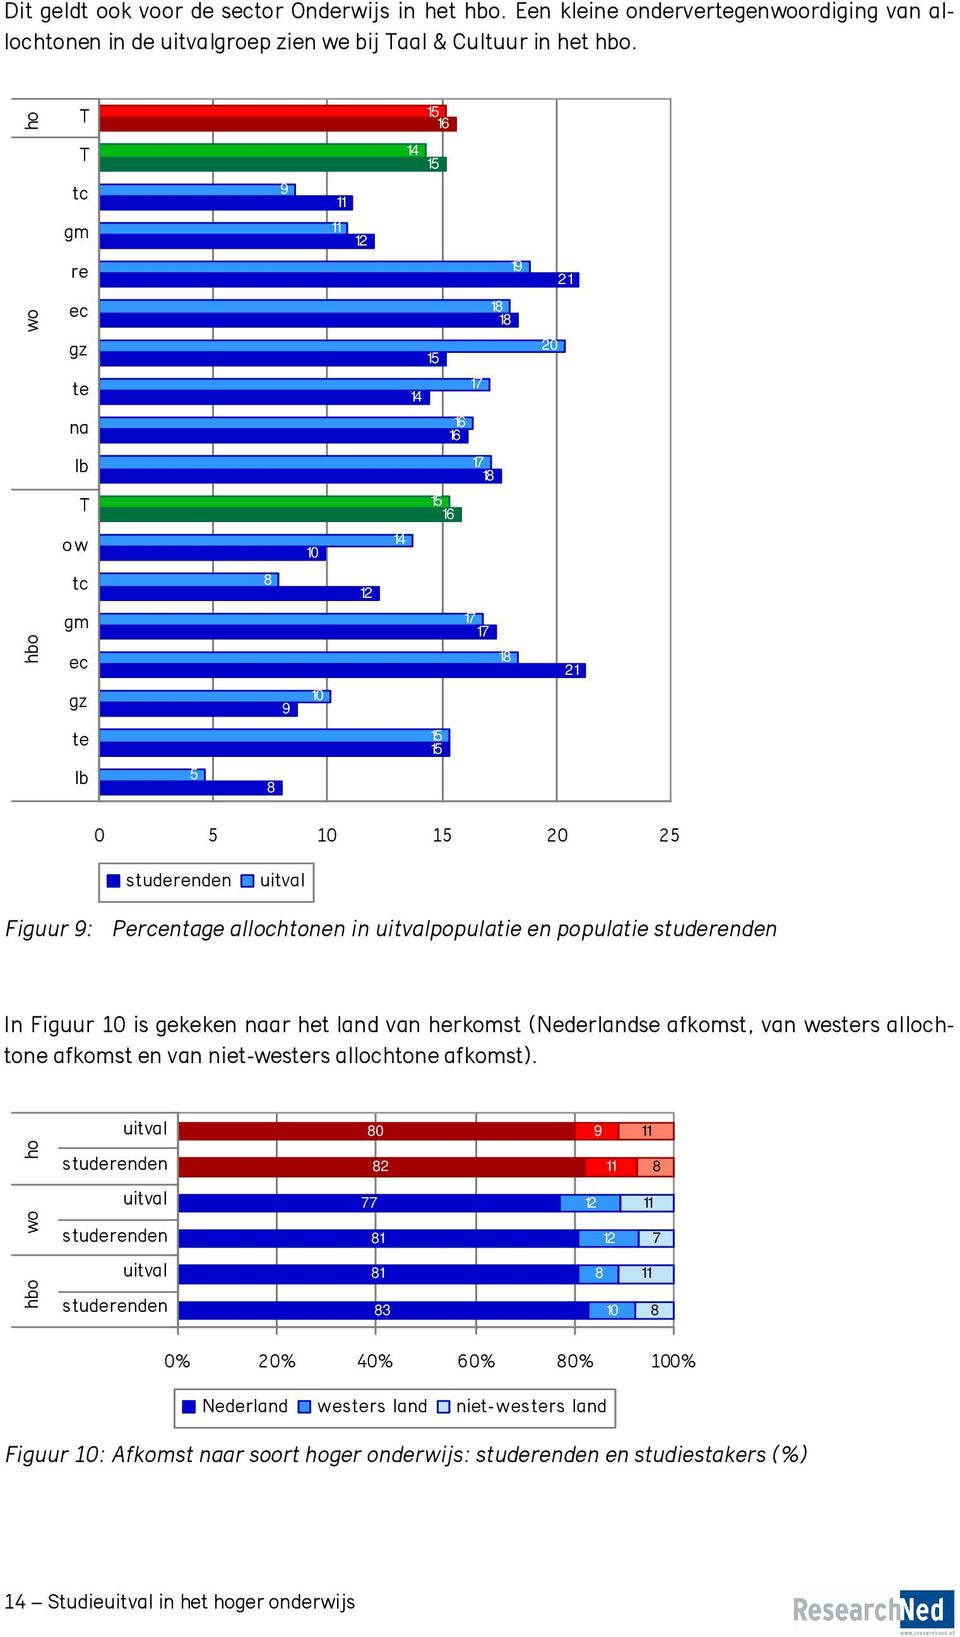 Percentage allochtonen in populatie en populatie In Figuur 10 is gekeken naar het land van herkomst (Nederlandse afkomst, van westers allochtone afkomst en van niet-westers allochtone